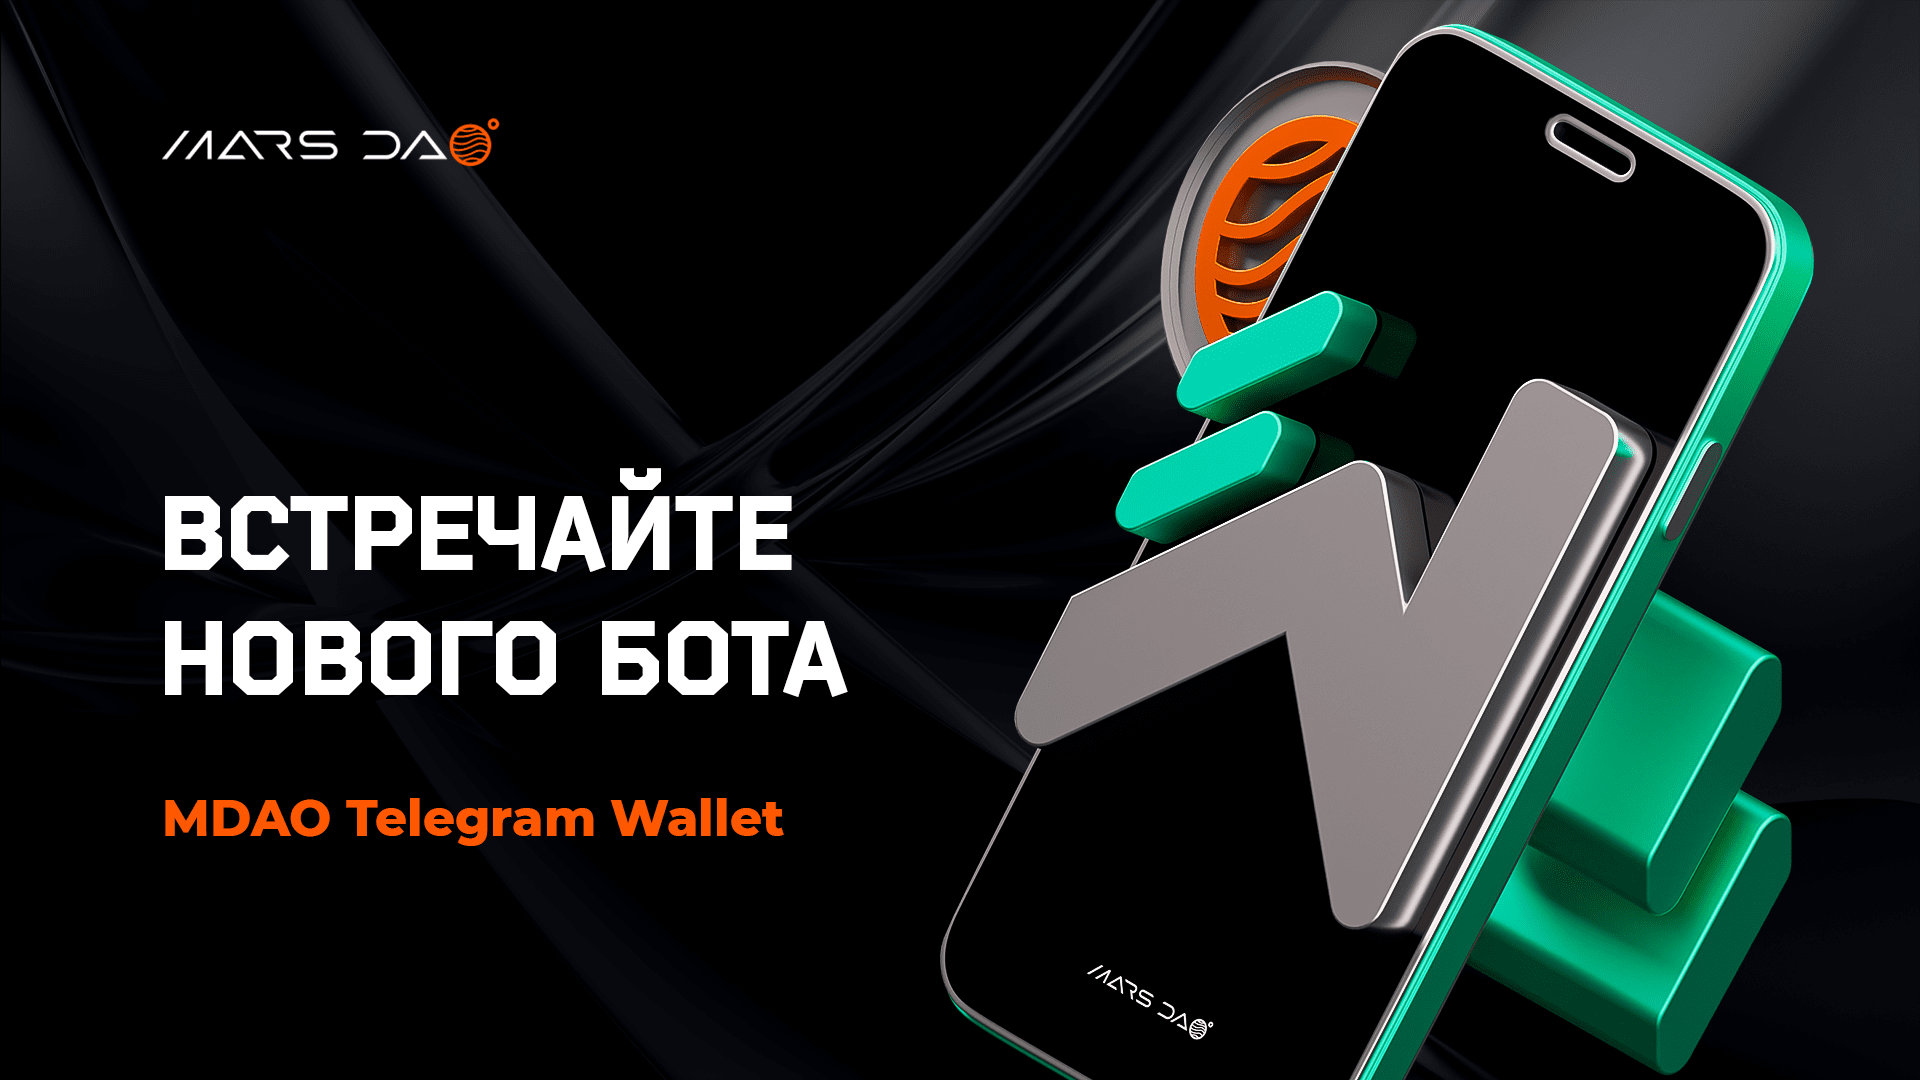 Встречайте нового бота MDAO Telegram Wallet